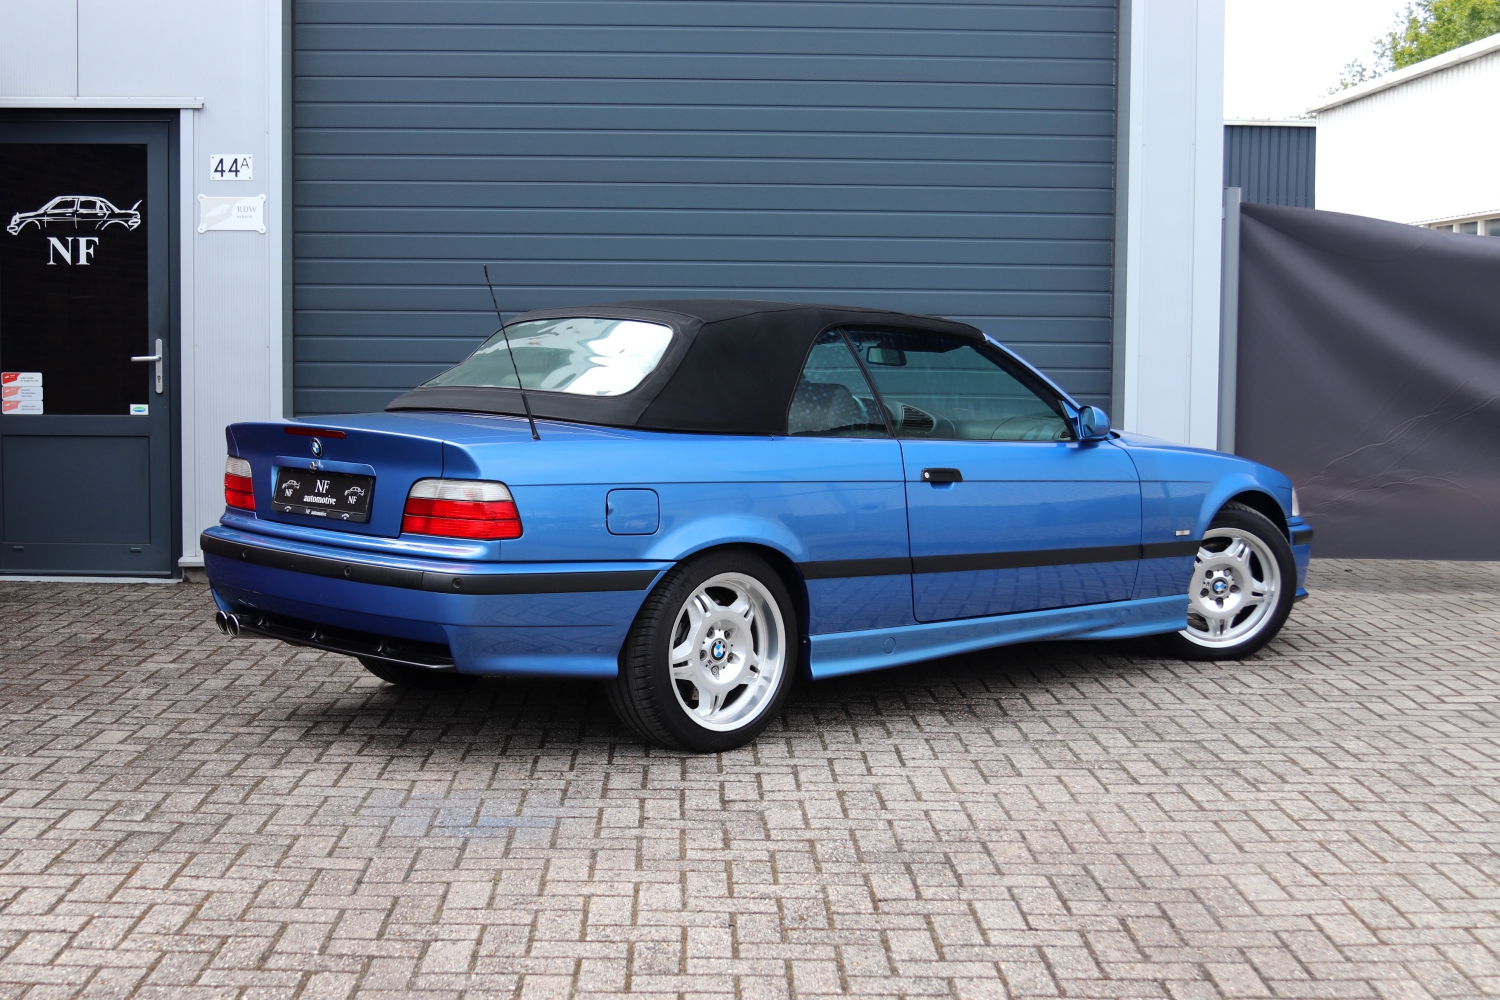 BMW-M3-Cabriolet-3.2-E36-1997-SBNJ95-086.JPG